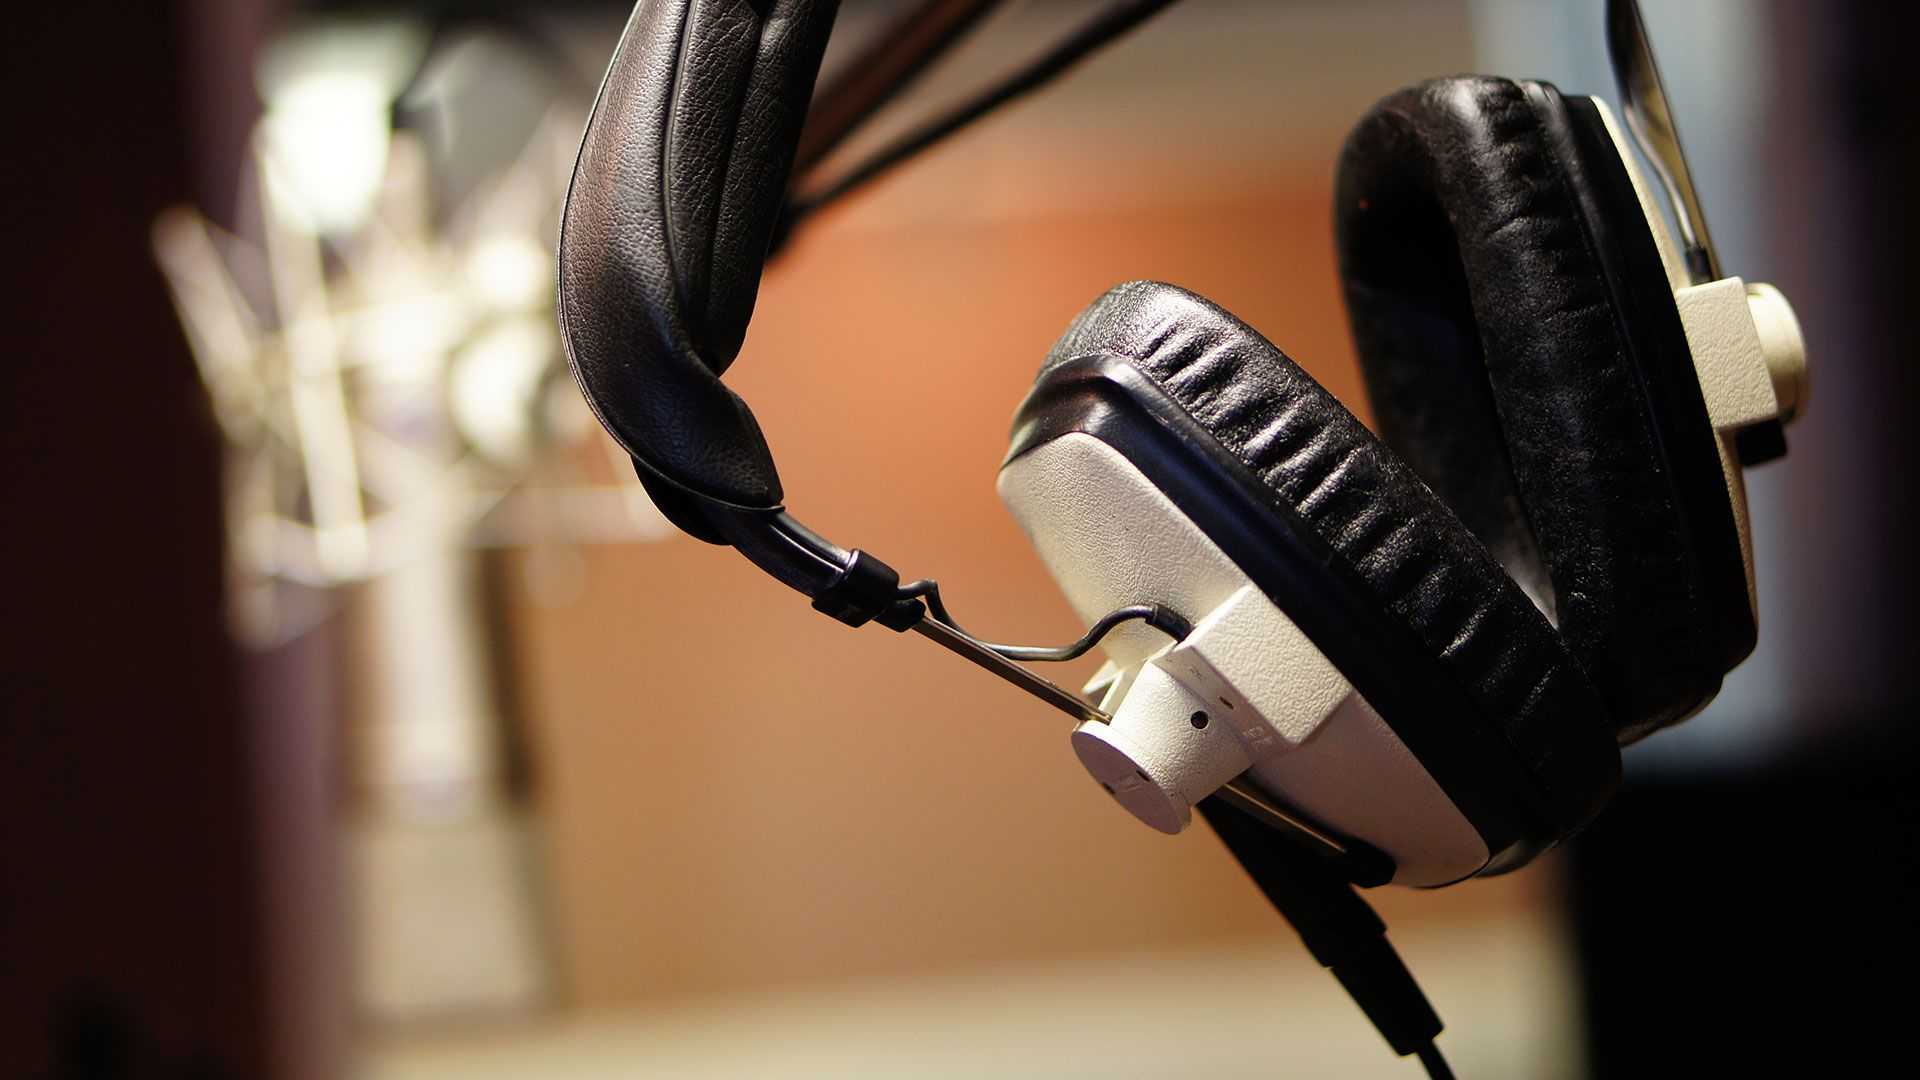 Как выбрать наушники для домашней звукозаписывающей студии: топ наушников для записи и сведения музыки - техмагия